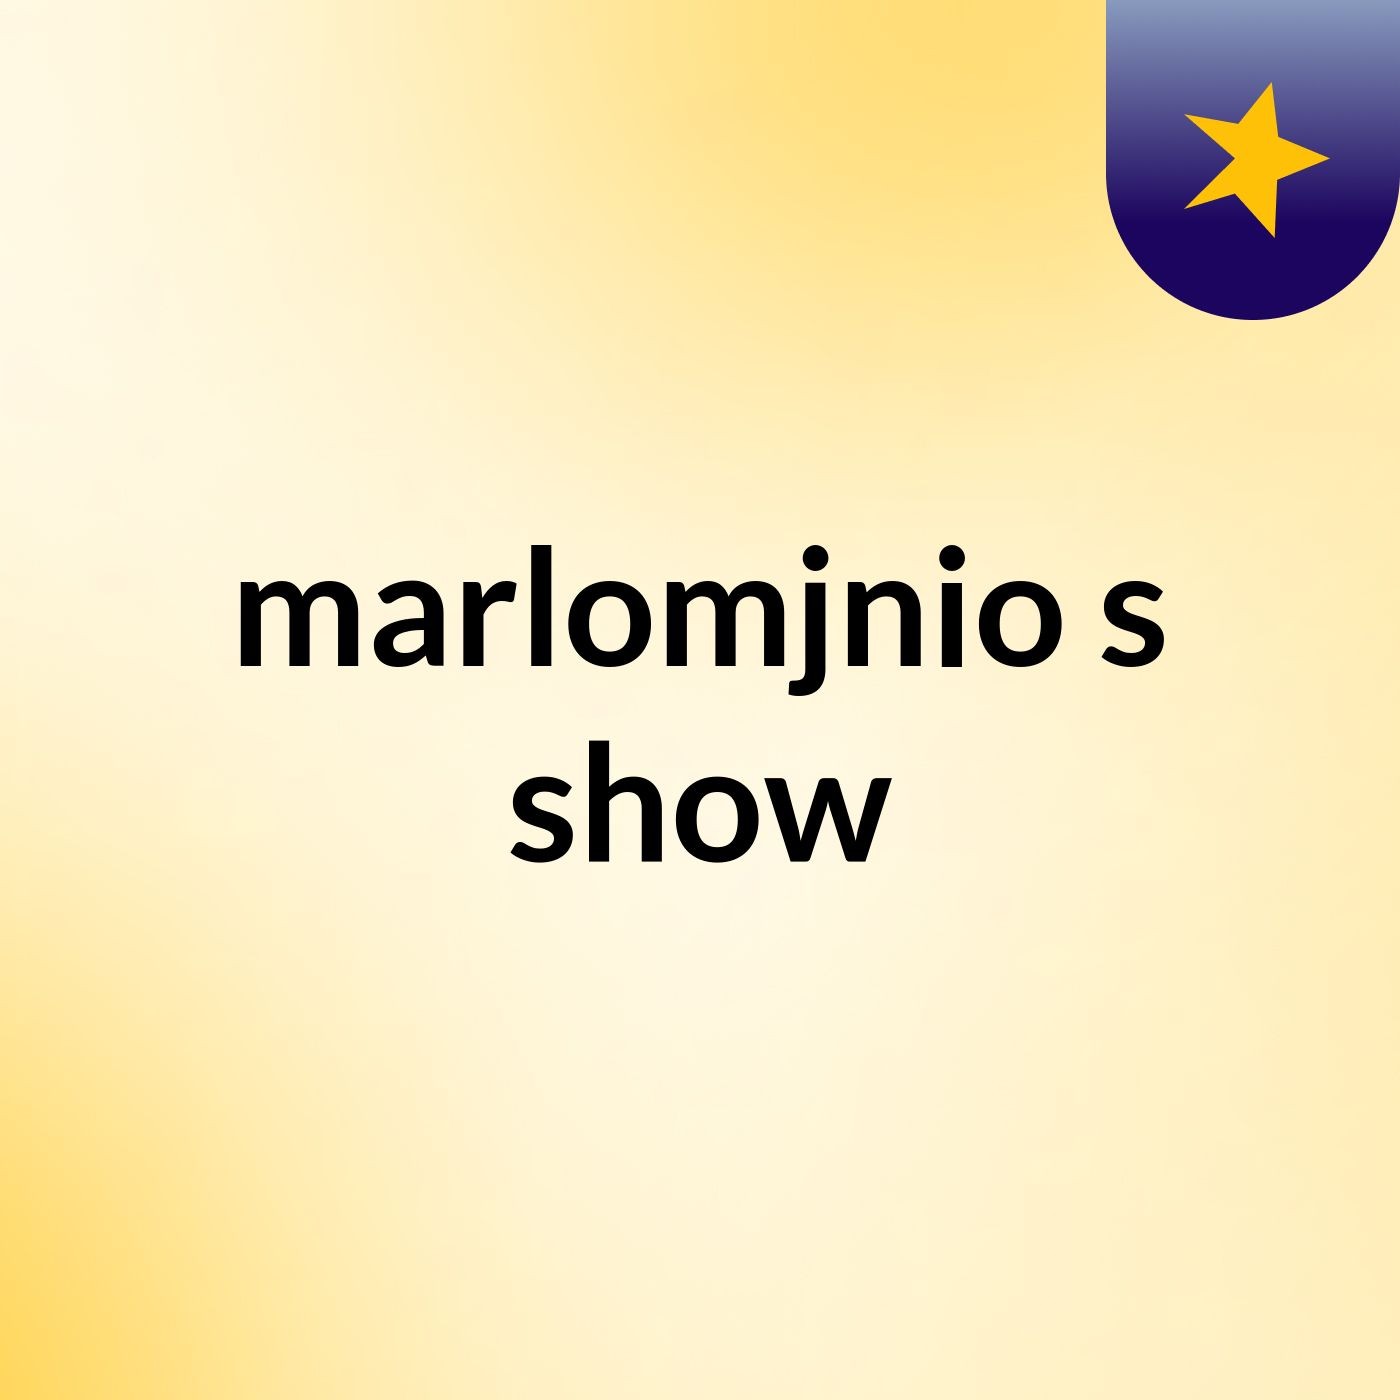 marlomjnio's show